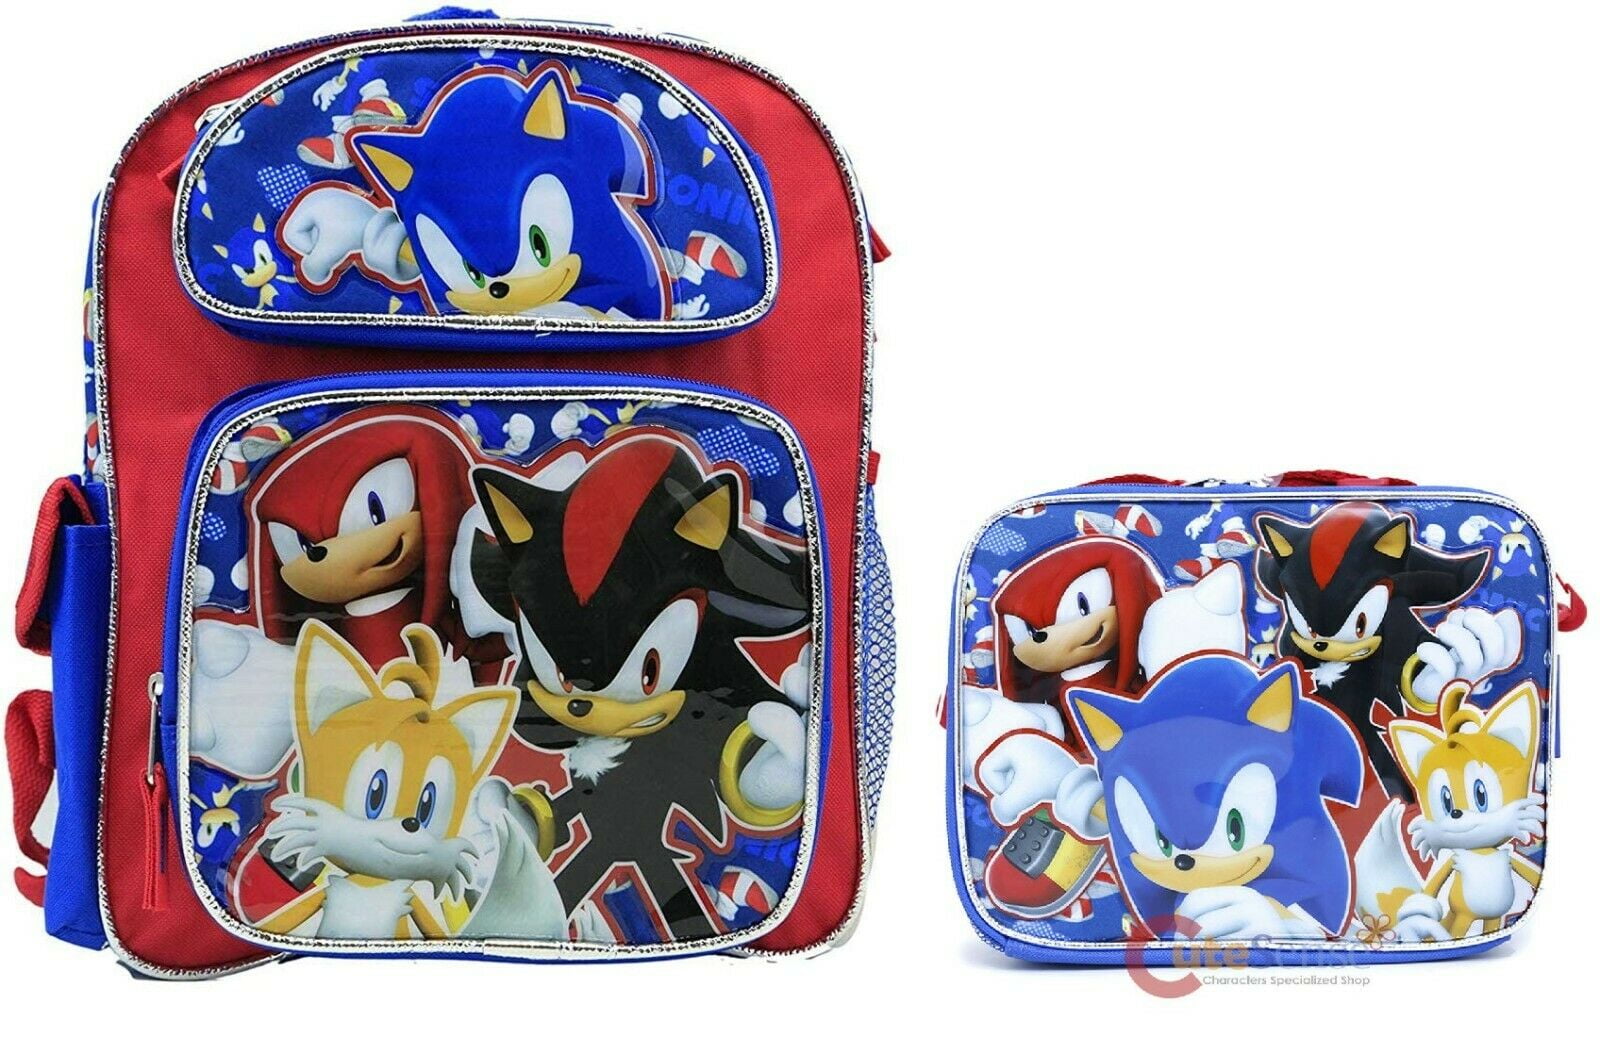 Super Hedgehog Bro & Tails Hunt Backpack Daypack Rucksack Laptop Shoulder Bag with USB Charging Port